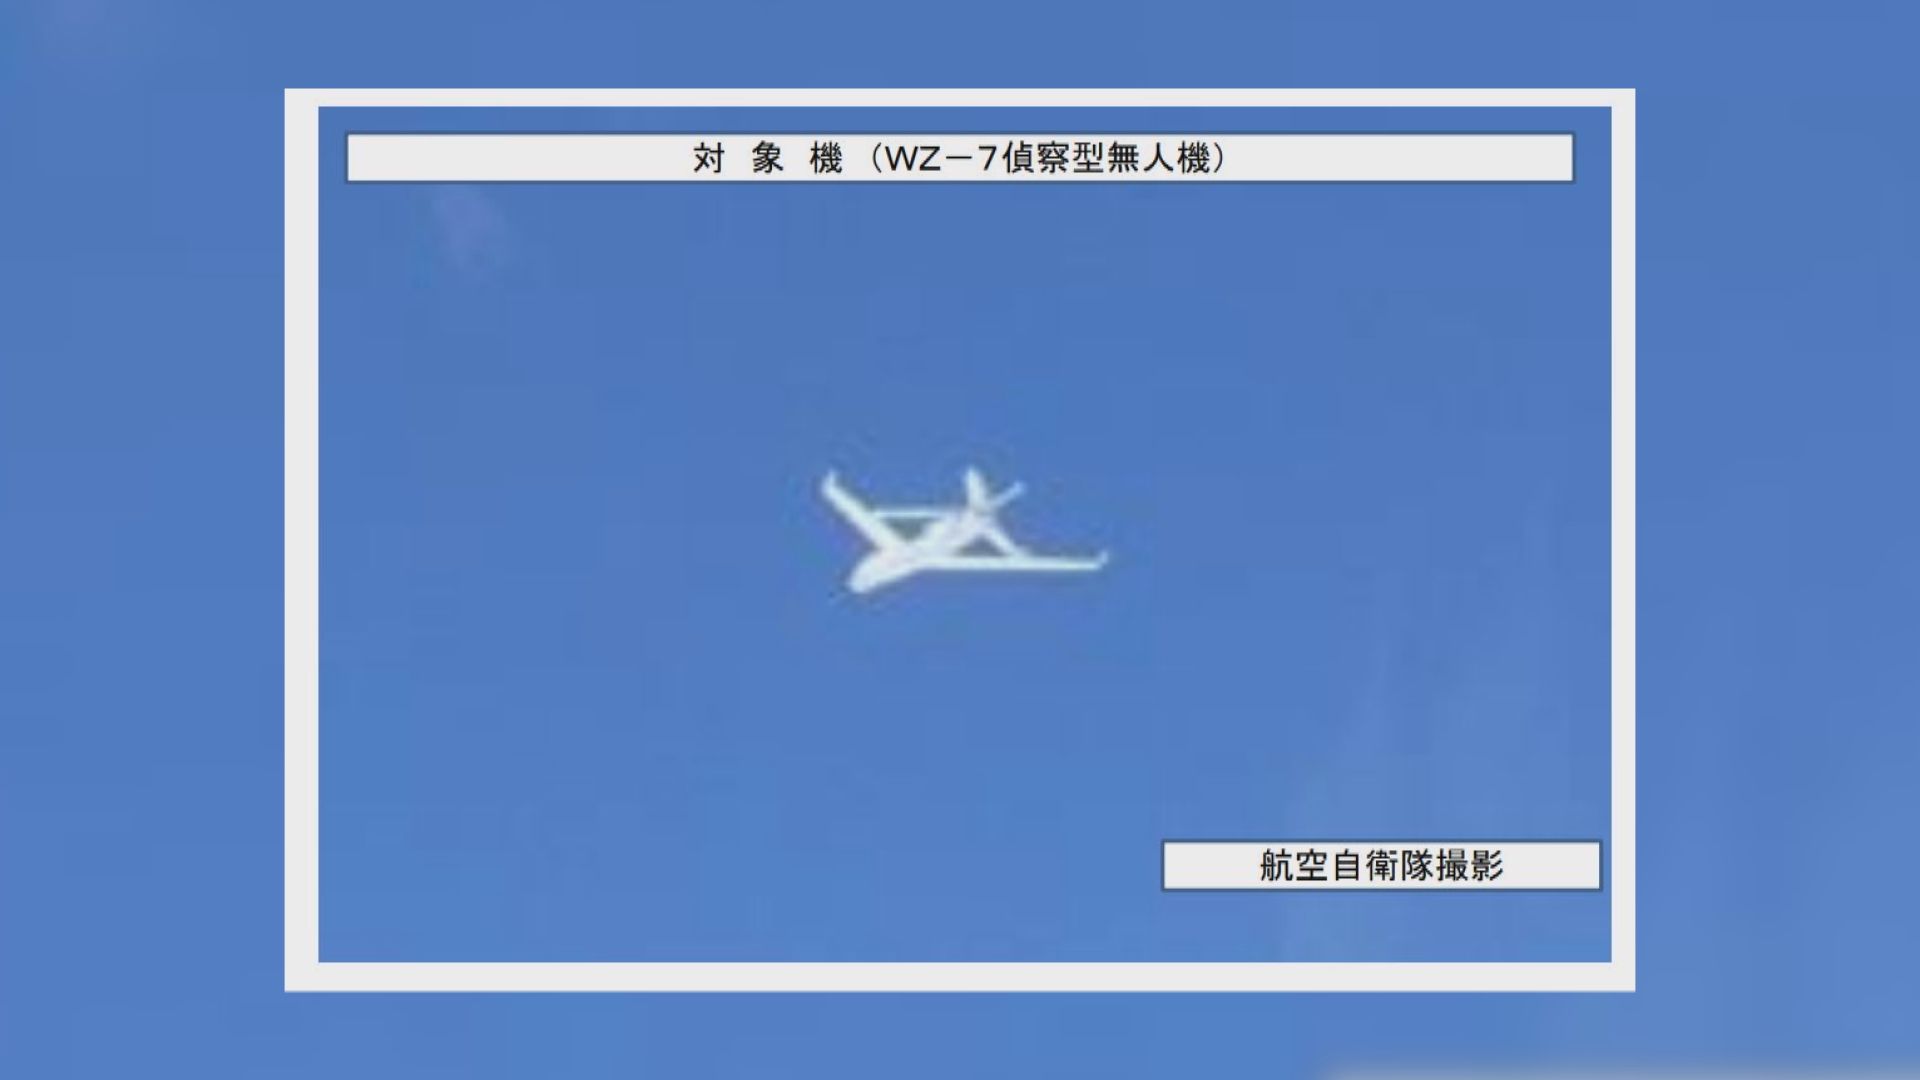 日本稱首次發現中國無人機飛經日本海